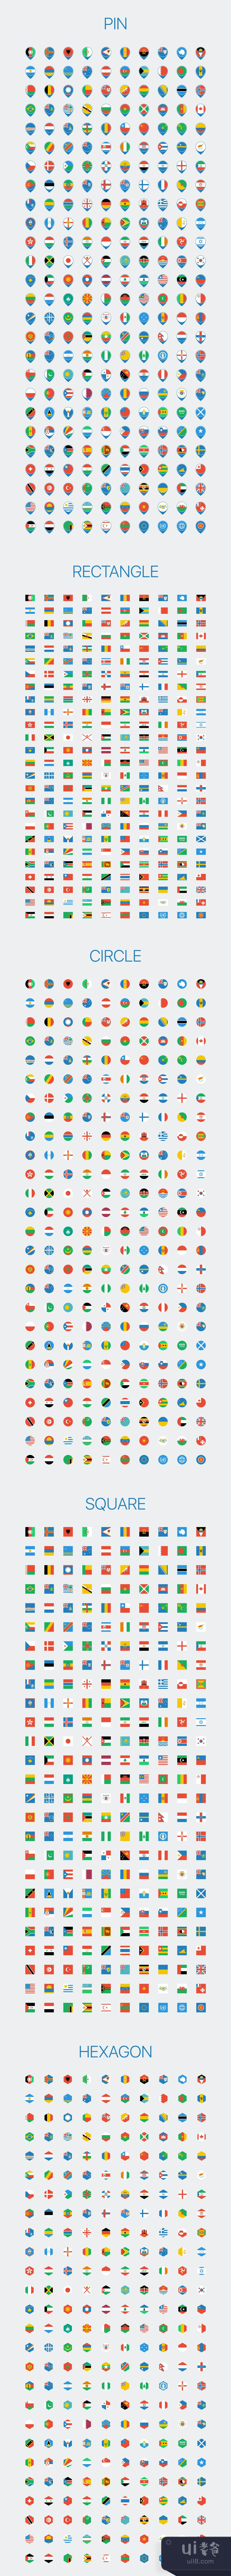 简化的世界旗帜 (Simplified World Flags)插图